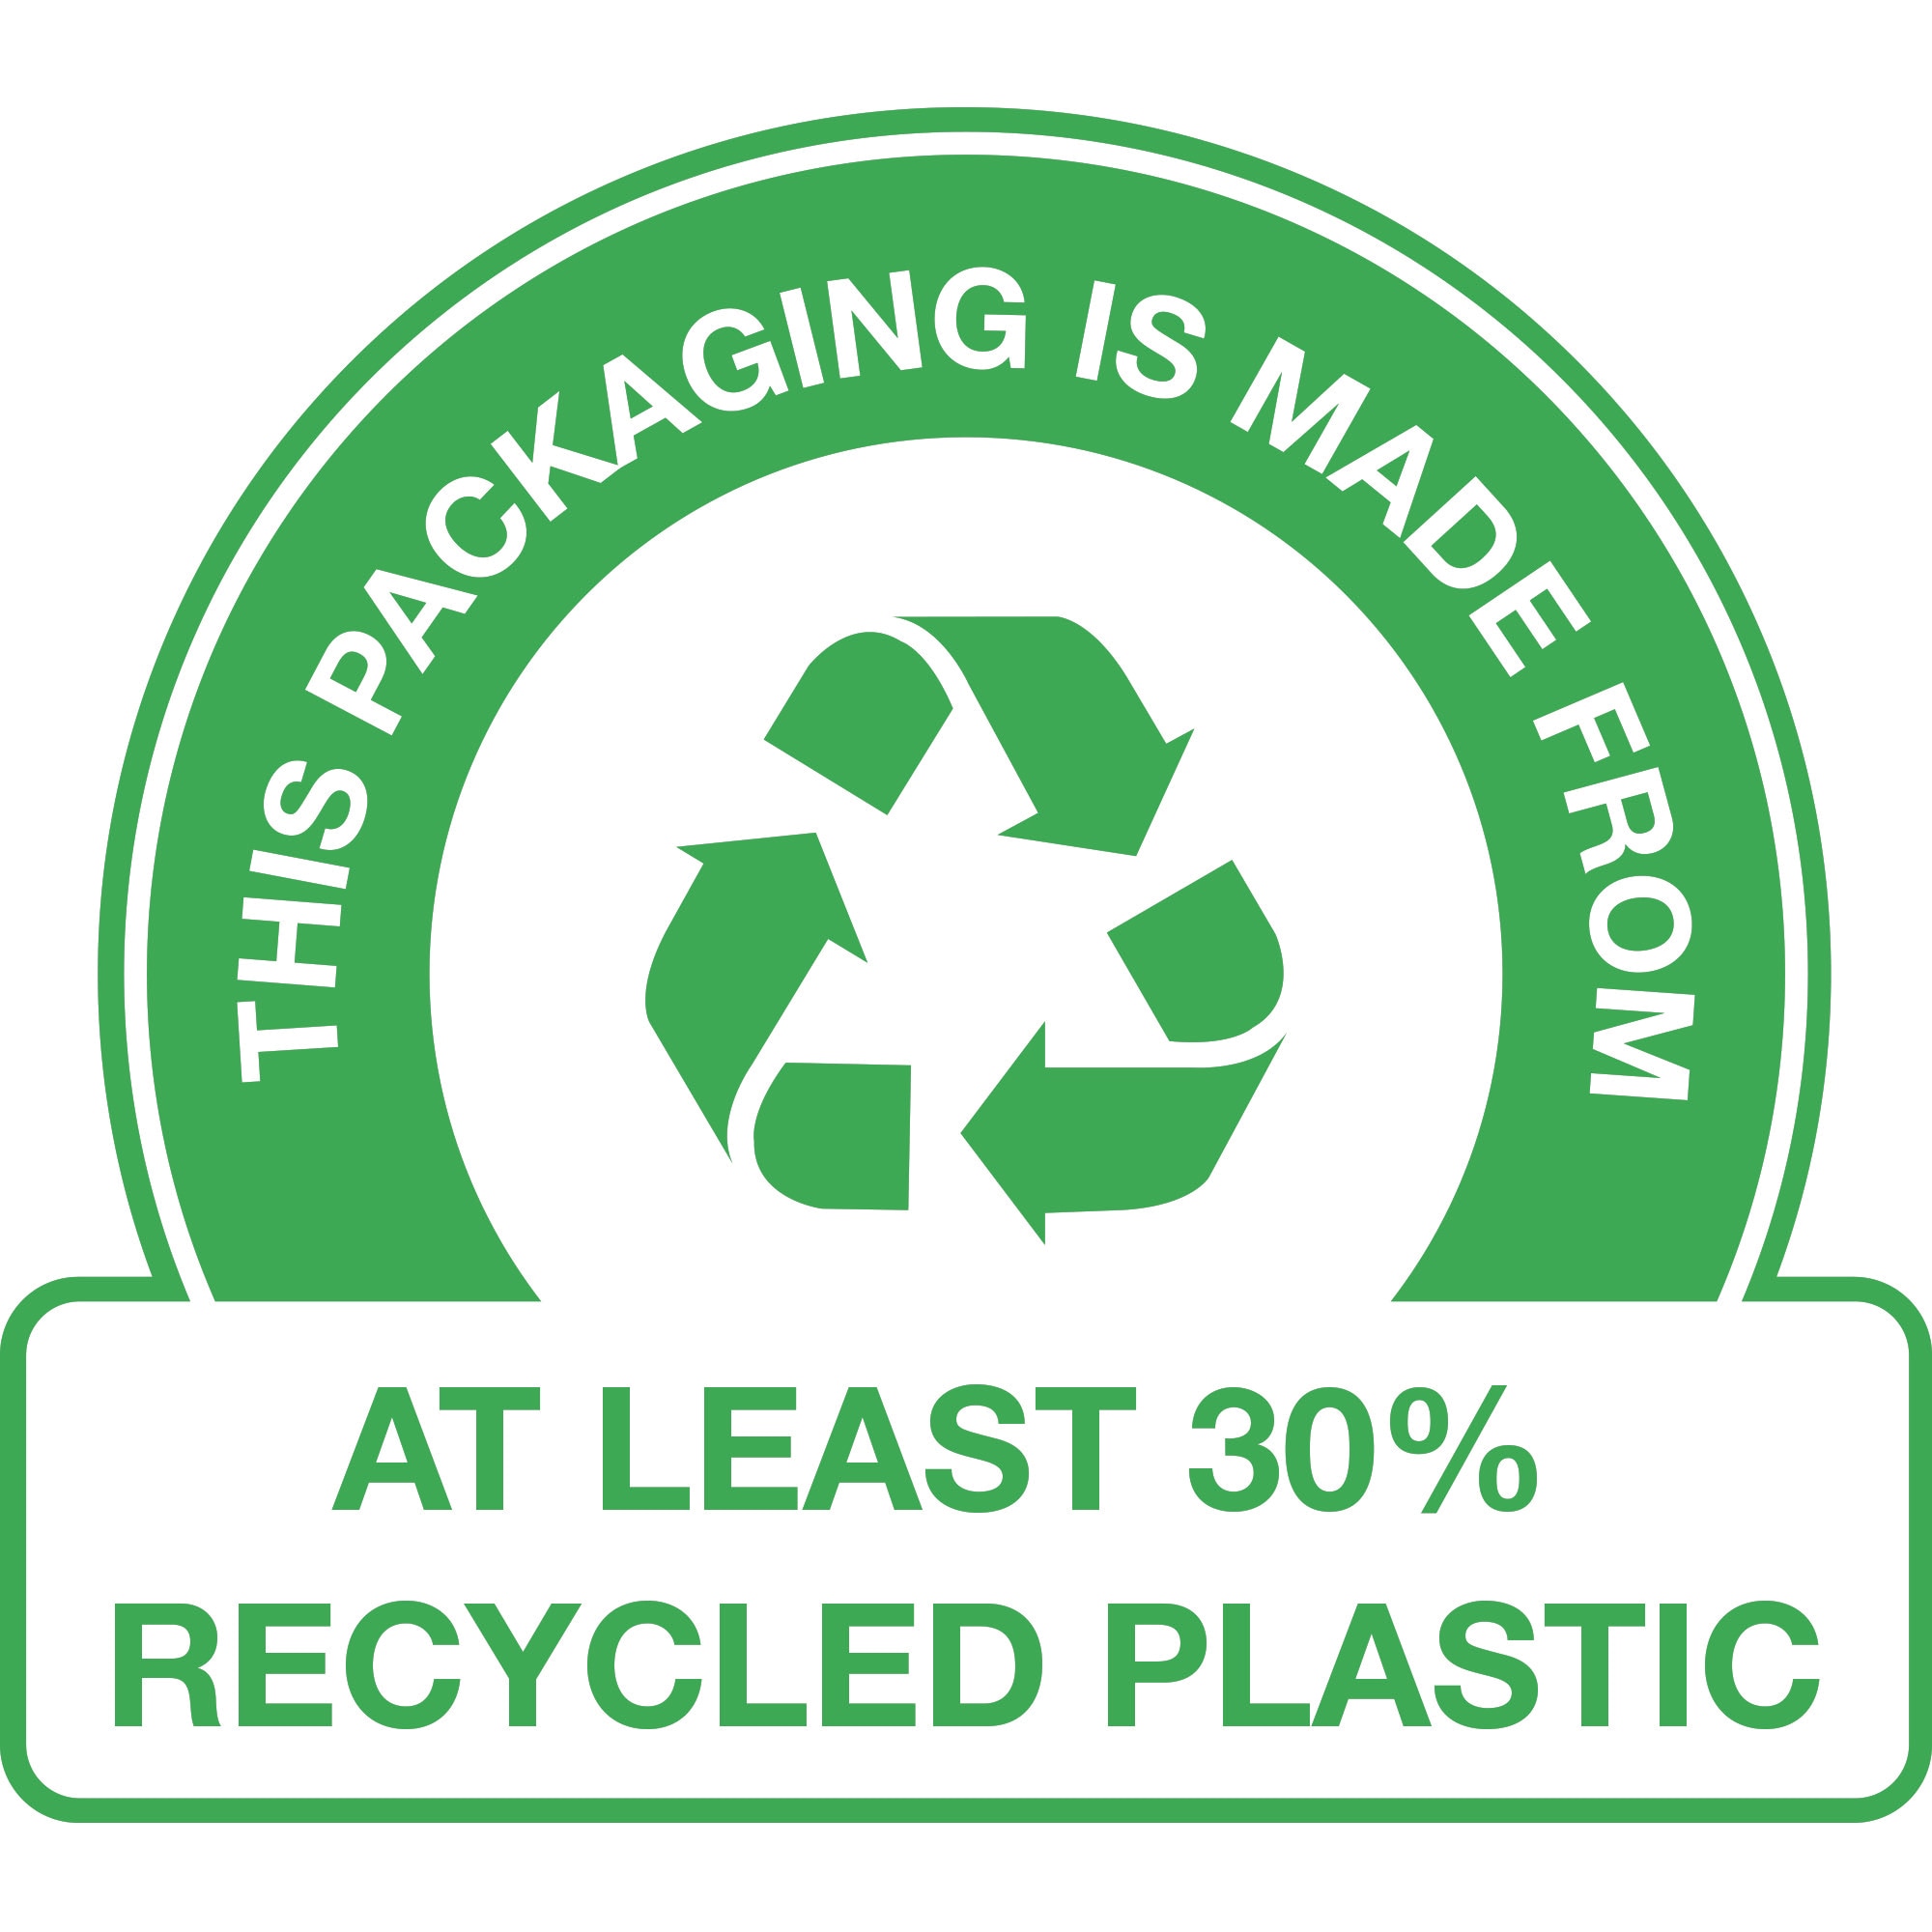 OPAKOWANIE WYPRODUKOWANE Z – plastiku pochodzącego przynajmniej w 30% z recyklingu